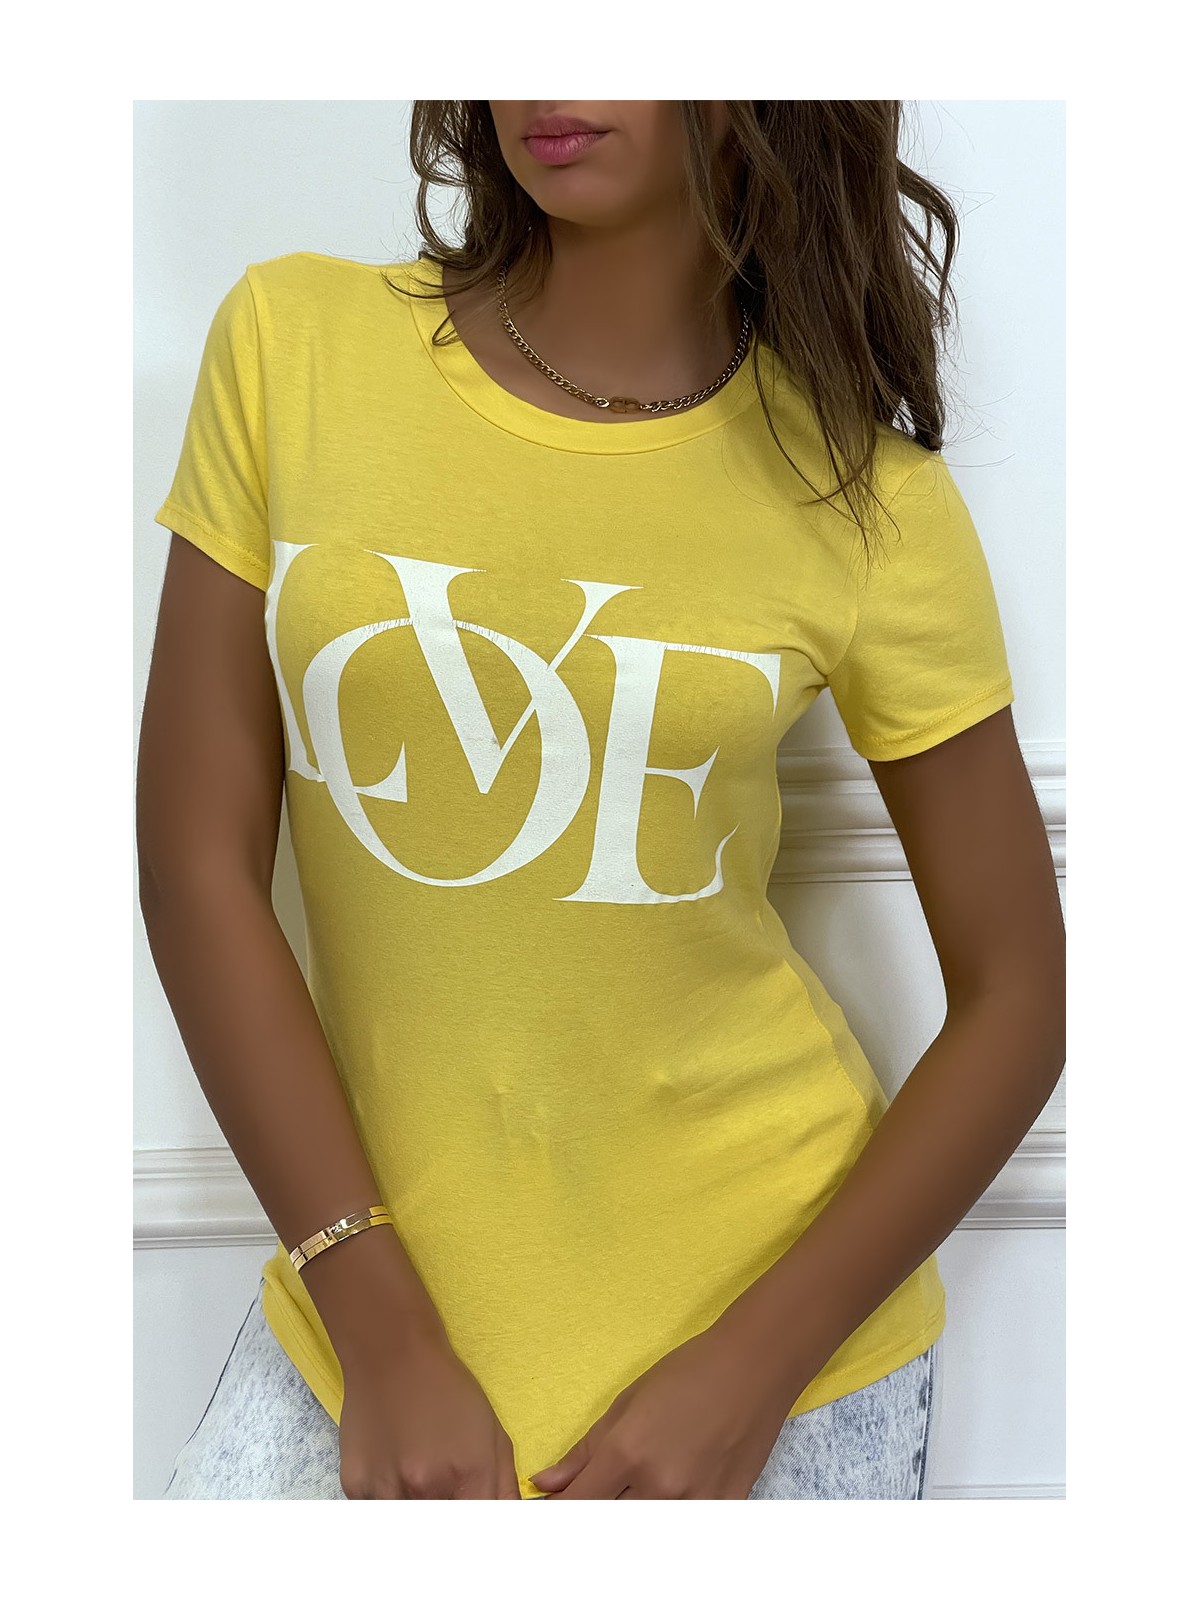 T-shirt basique jaune près du corps inscription "Love" - 2